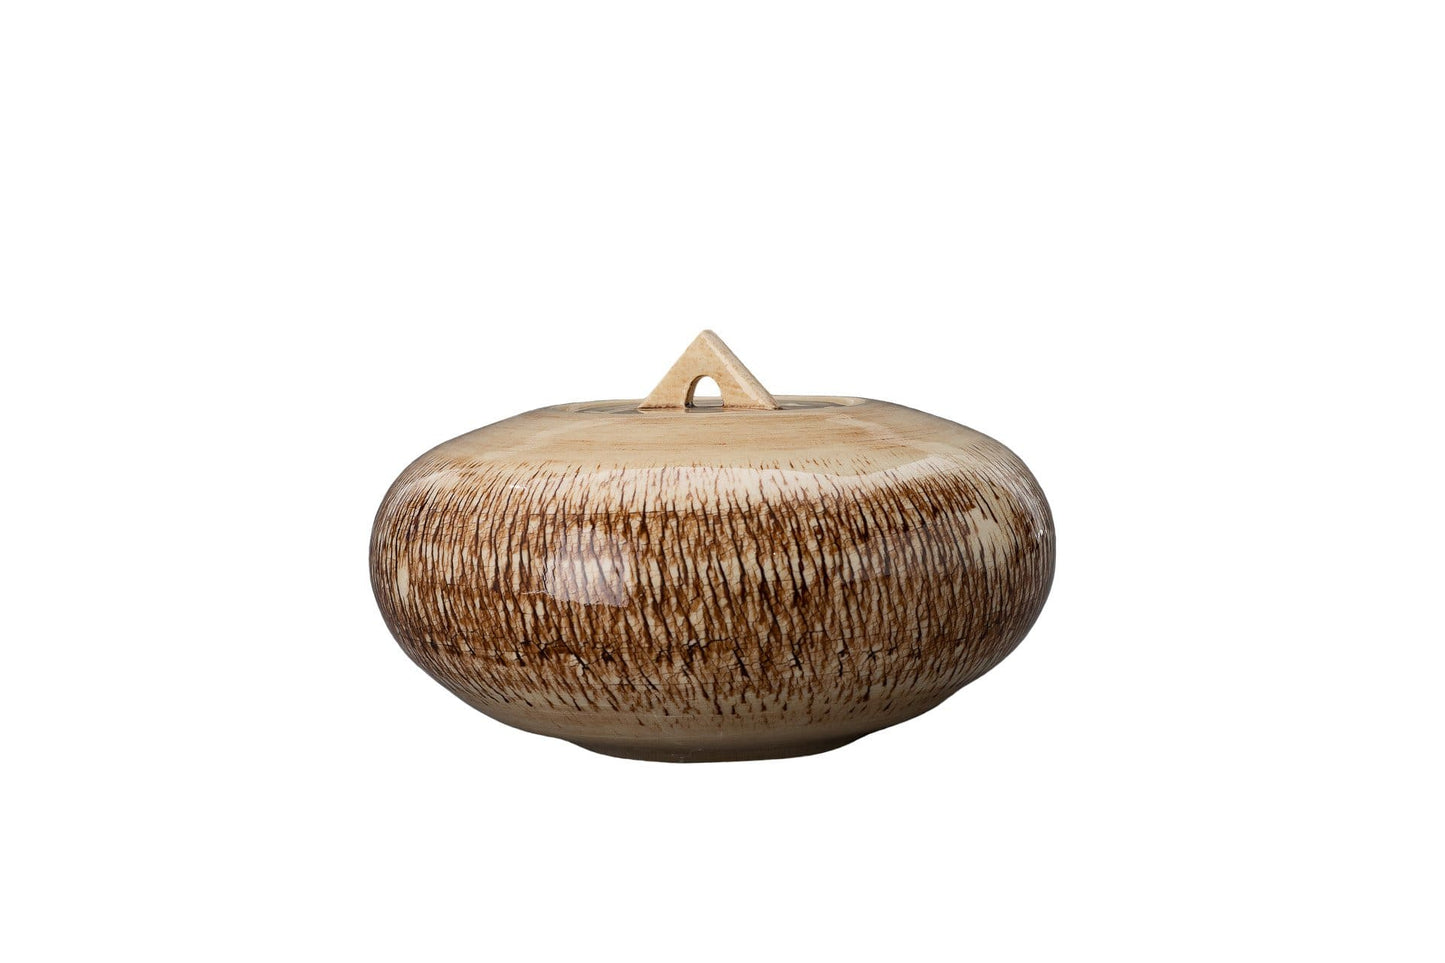 
                  
                    Urna artística de cerámica para cenizas - hecha a mano en un torno de cerámica por Pulvis Art Urns
                  
                